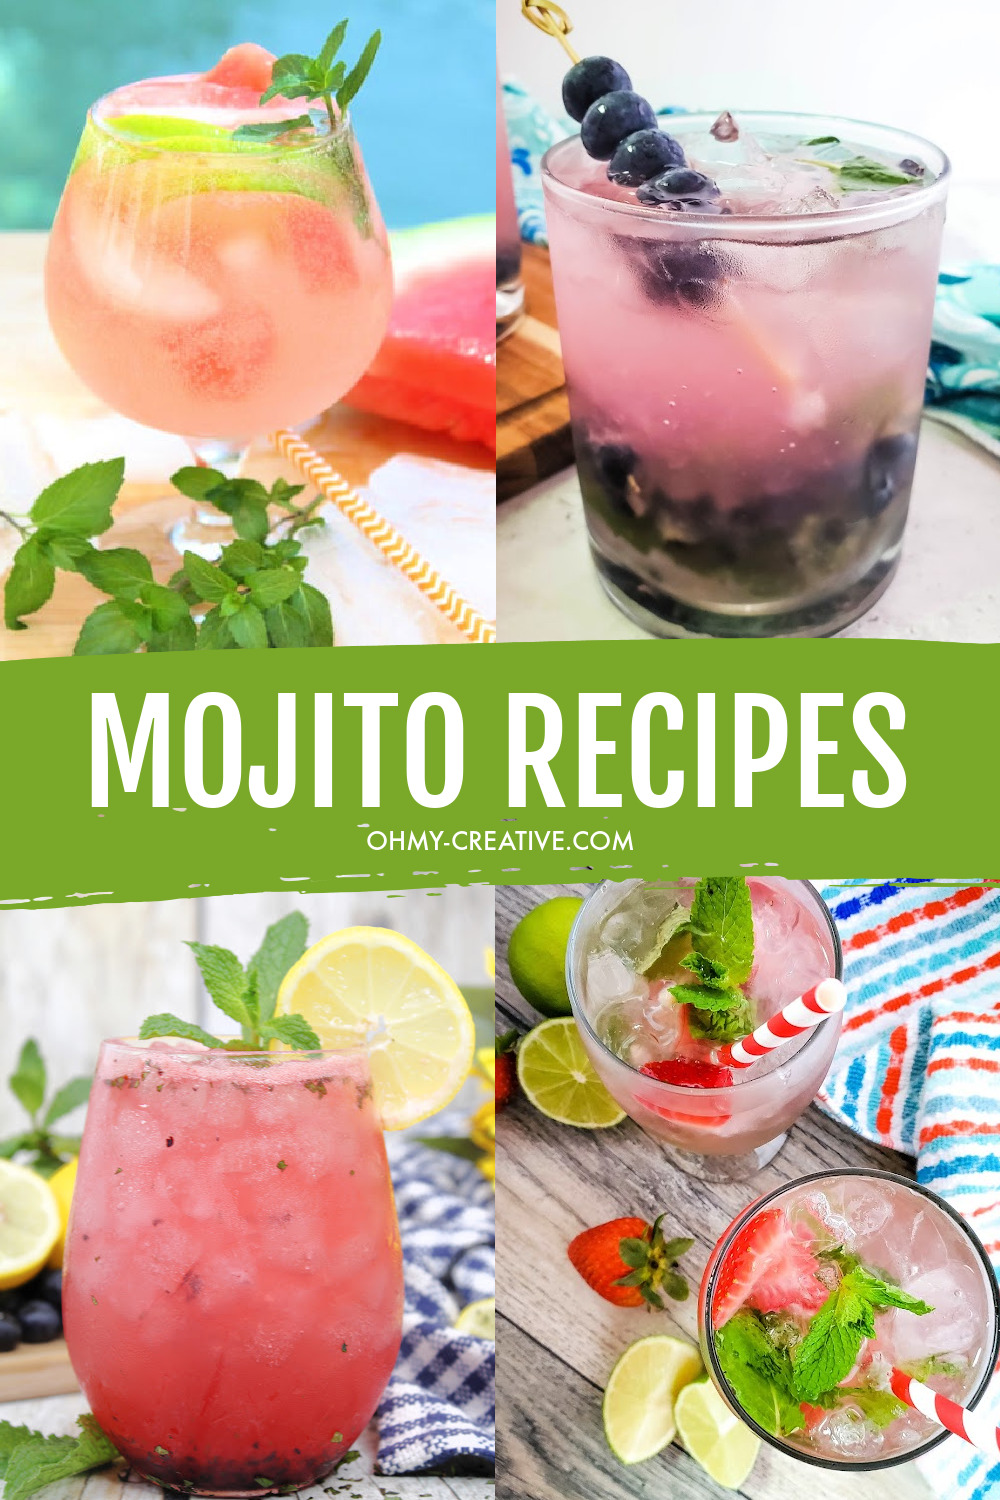 Mojito Recipes: Make The Best Mojitos